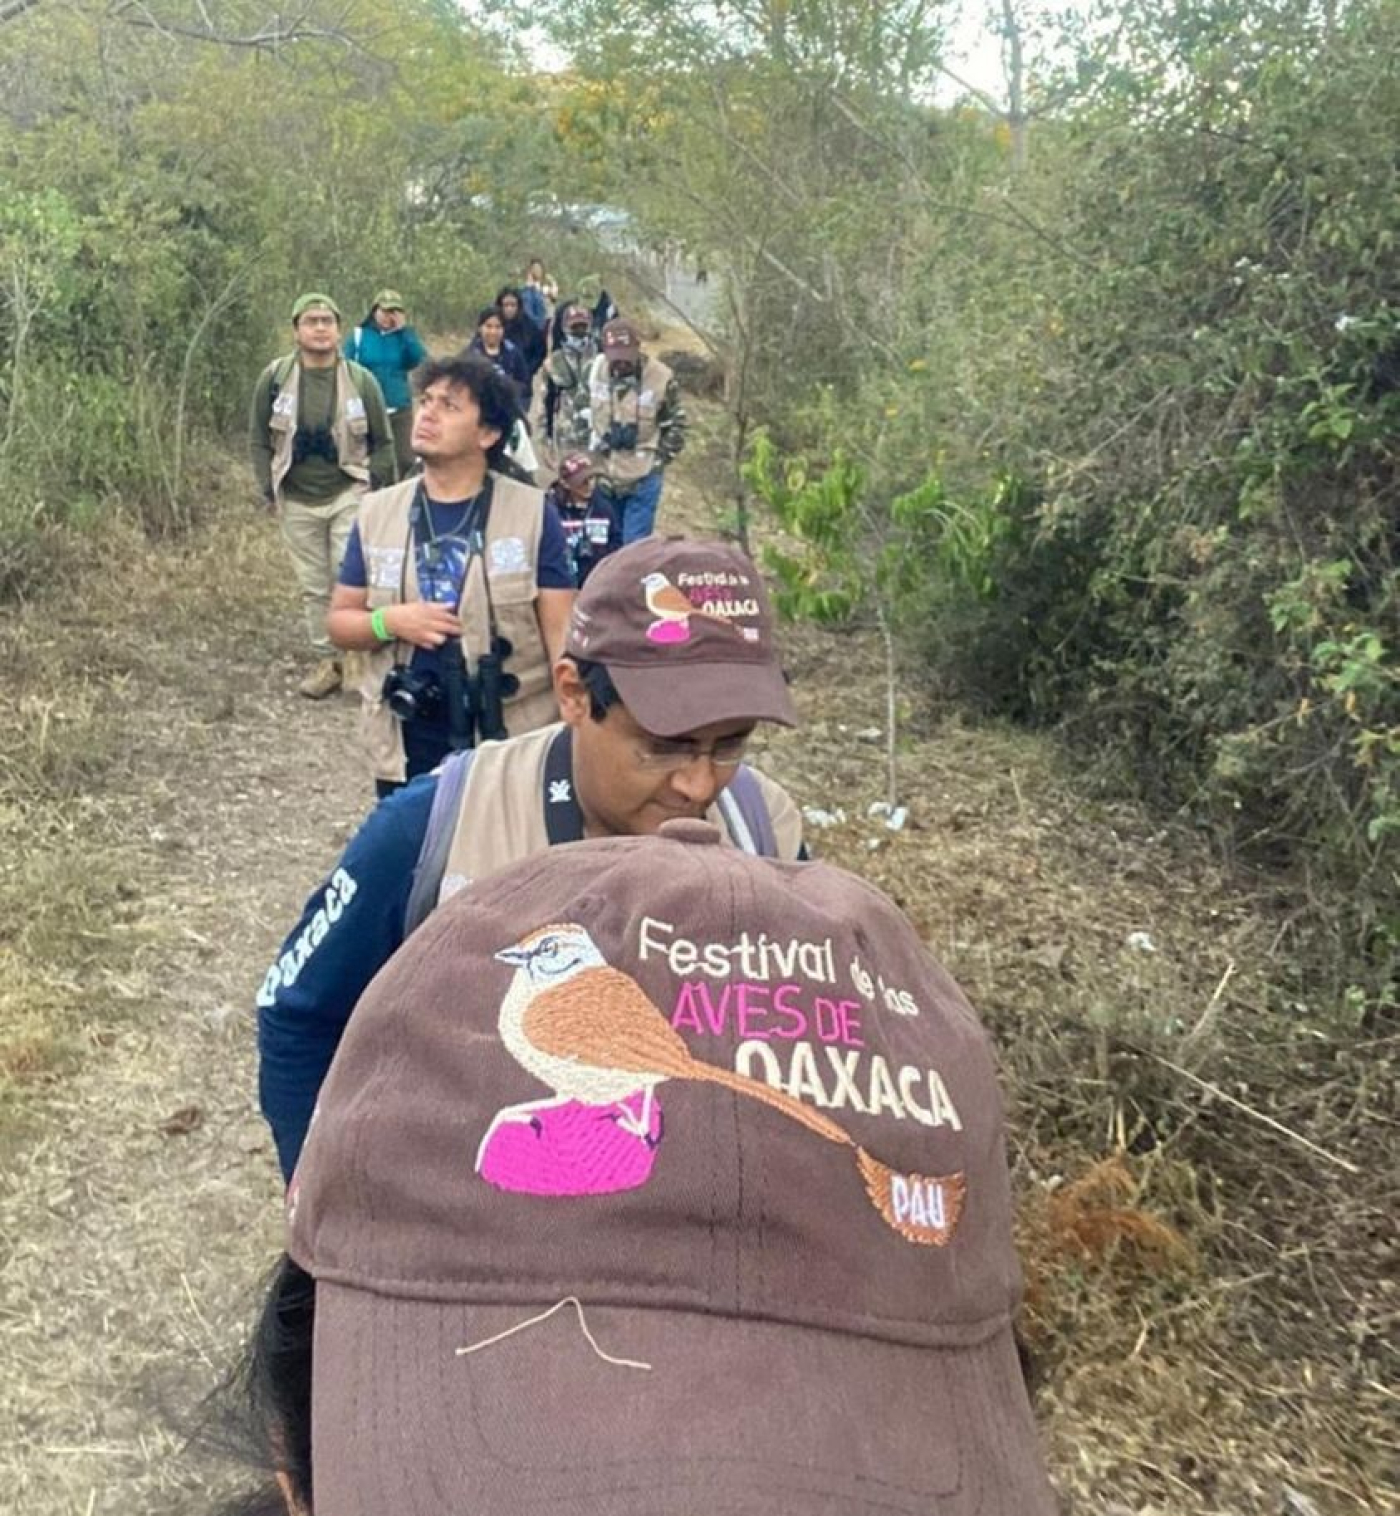 La Fundación de Parques y Museos participa en el Festival de las Aves de Oaxaca